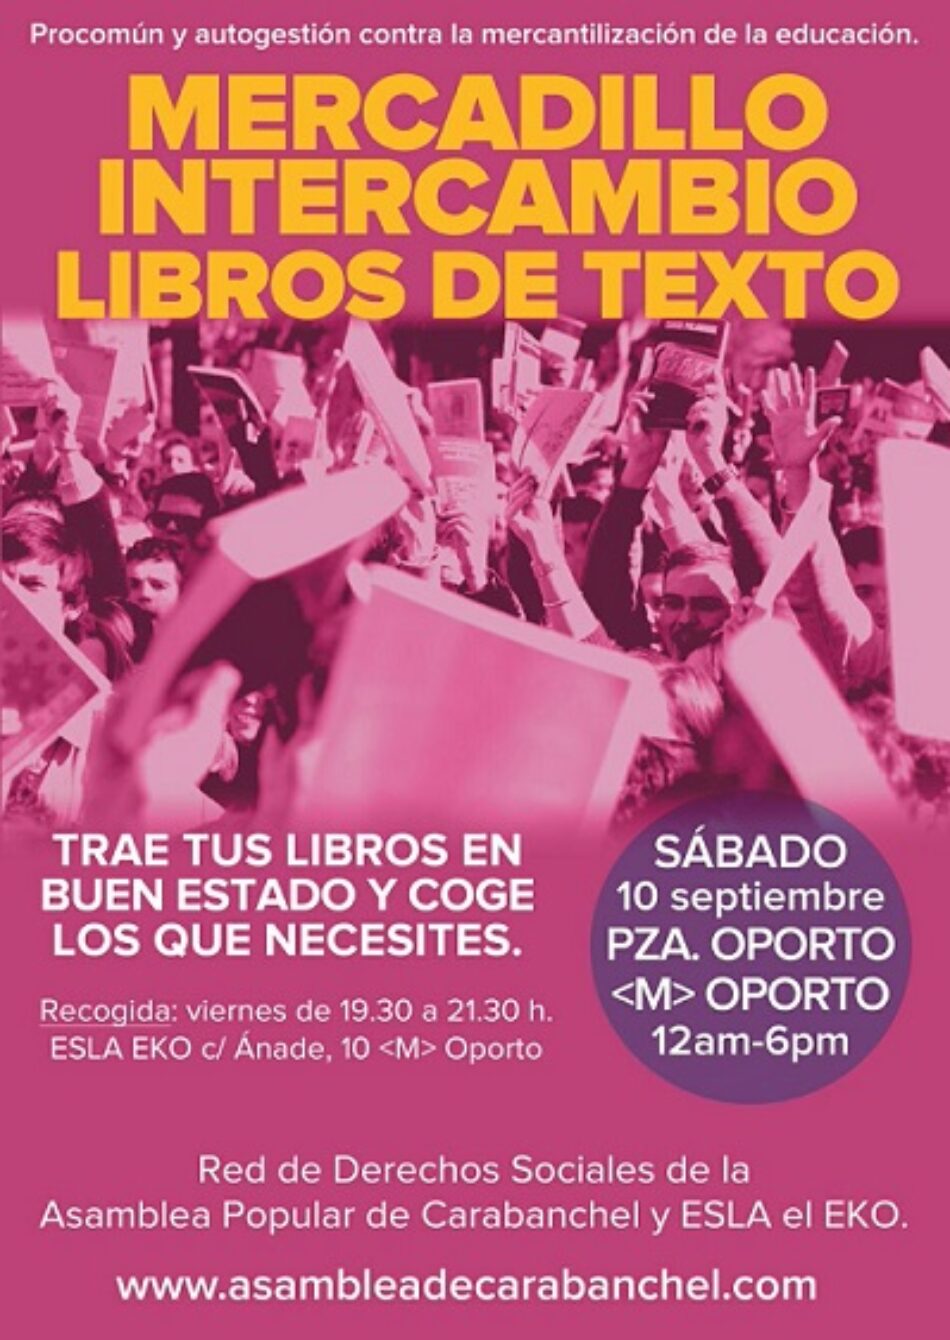 La Asamblea Carabanchel y ESLA Eko promueven un mercadillo de intercambio de libros de texto